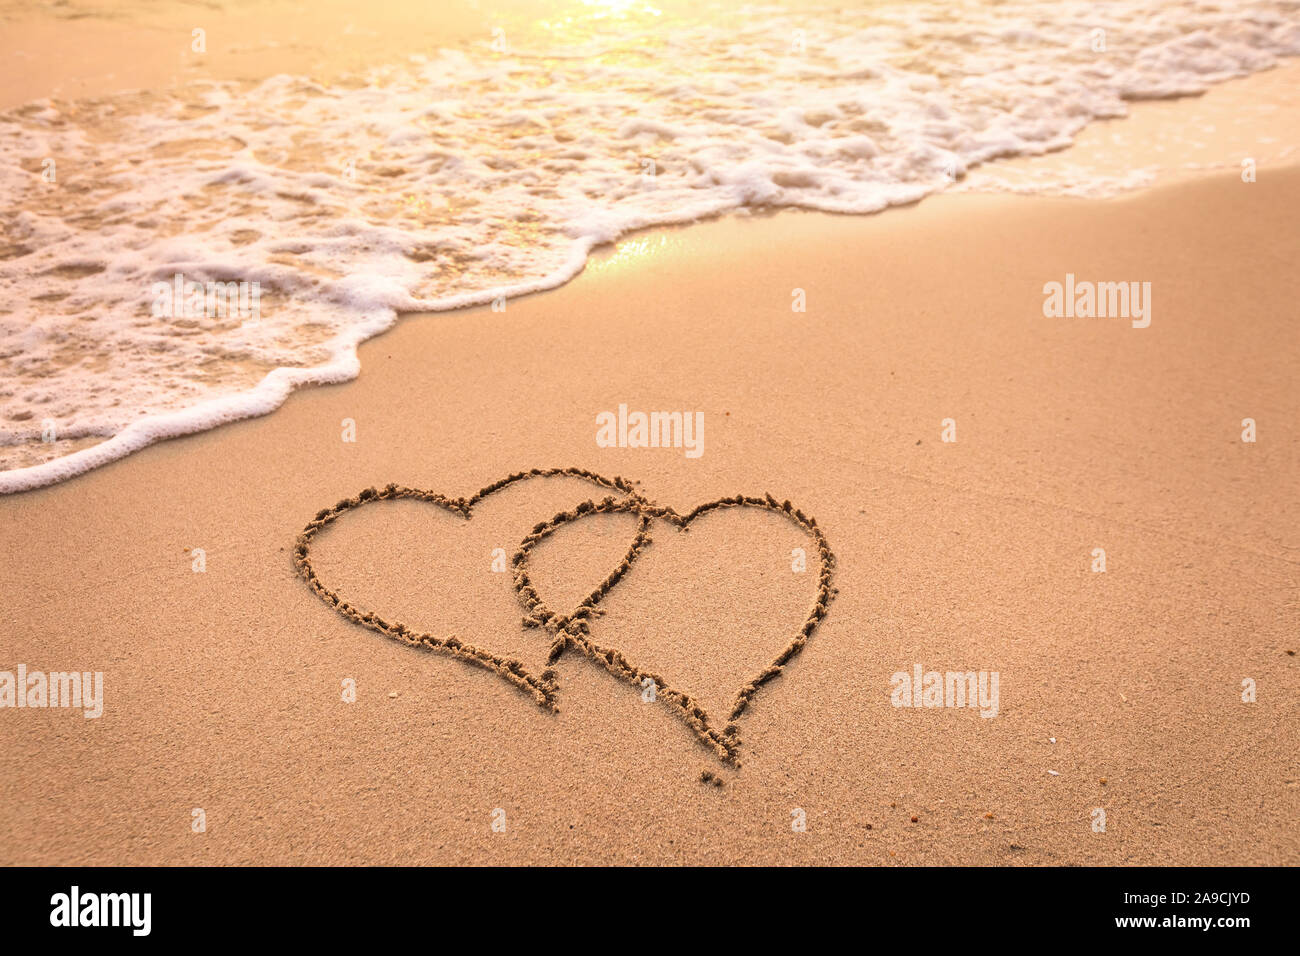 Romantische Hochzeitsreise Urlaub oder Valentinstag am Strand Konzept mit zwei Herzen in den Sand gezeichnet, tropische Zufluchtsort für Paare, Liebe Symbol Stockfoto